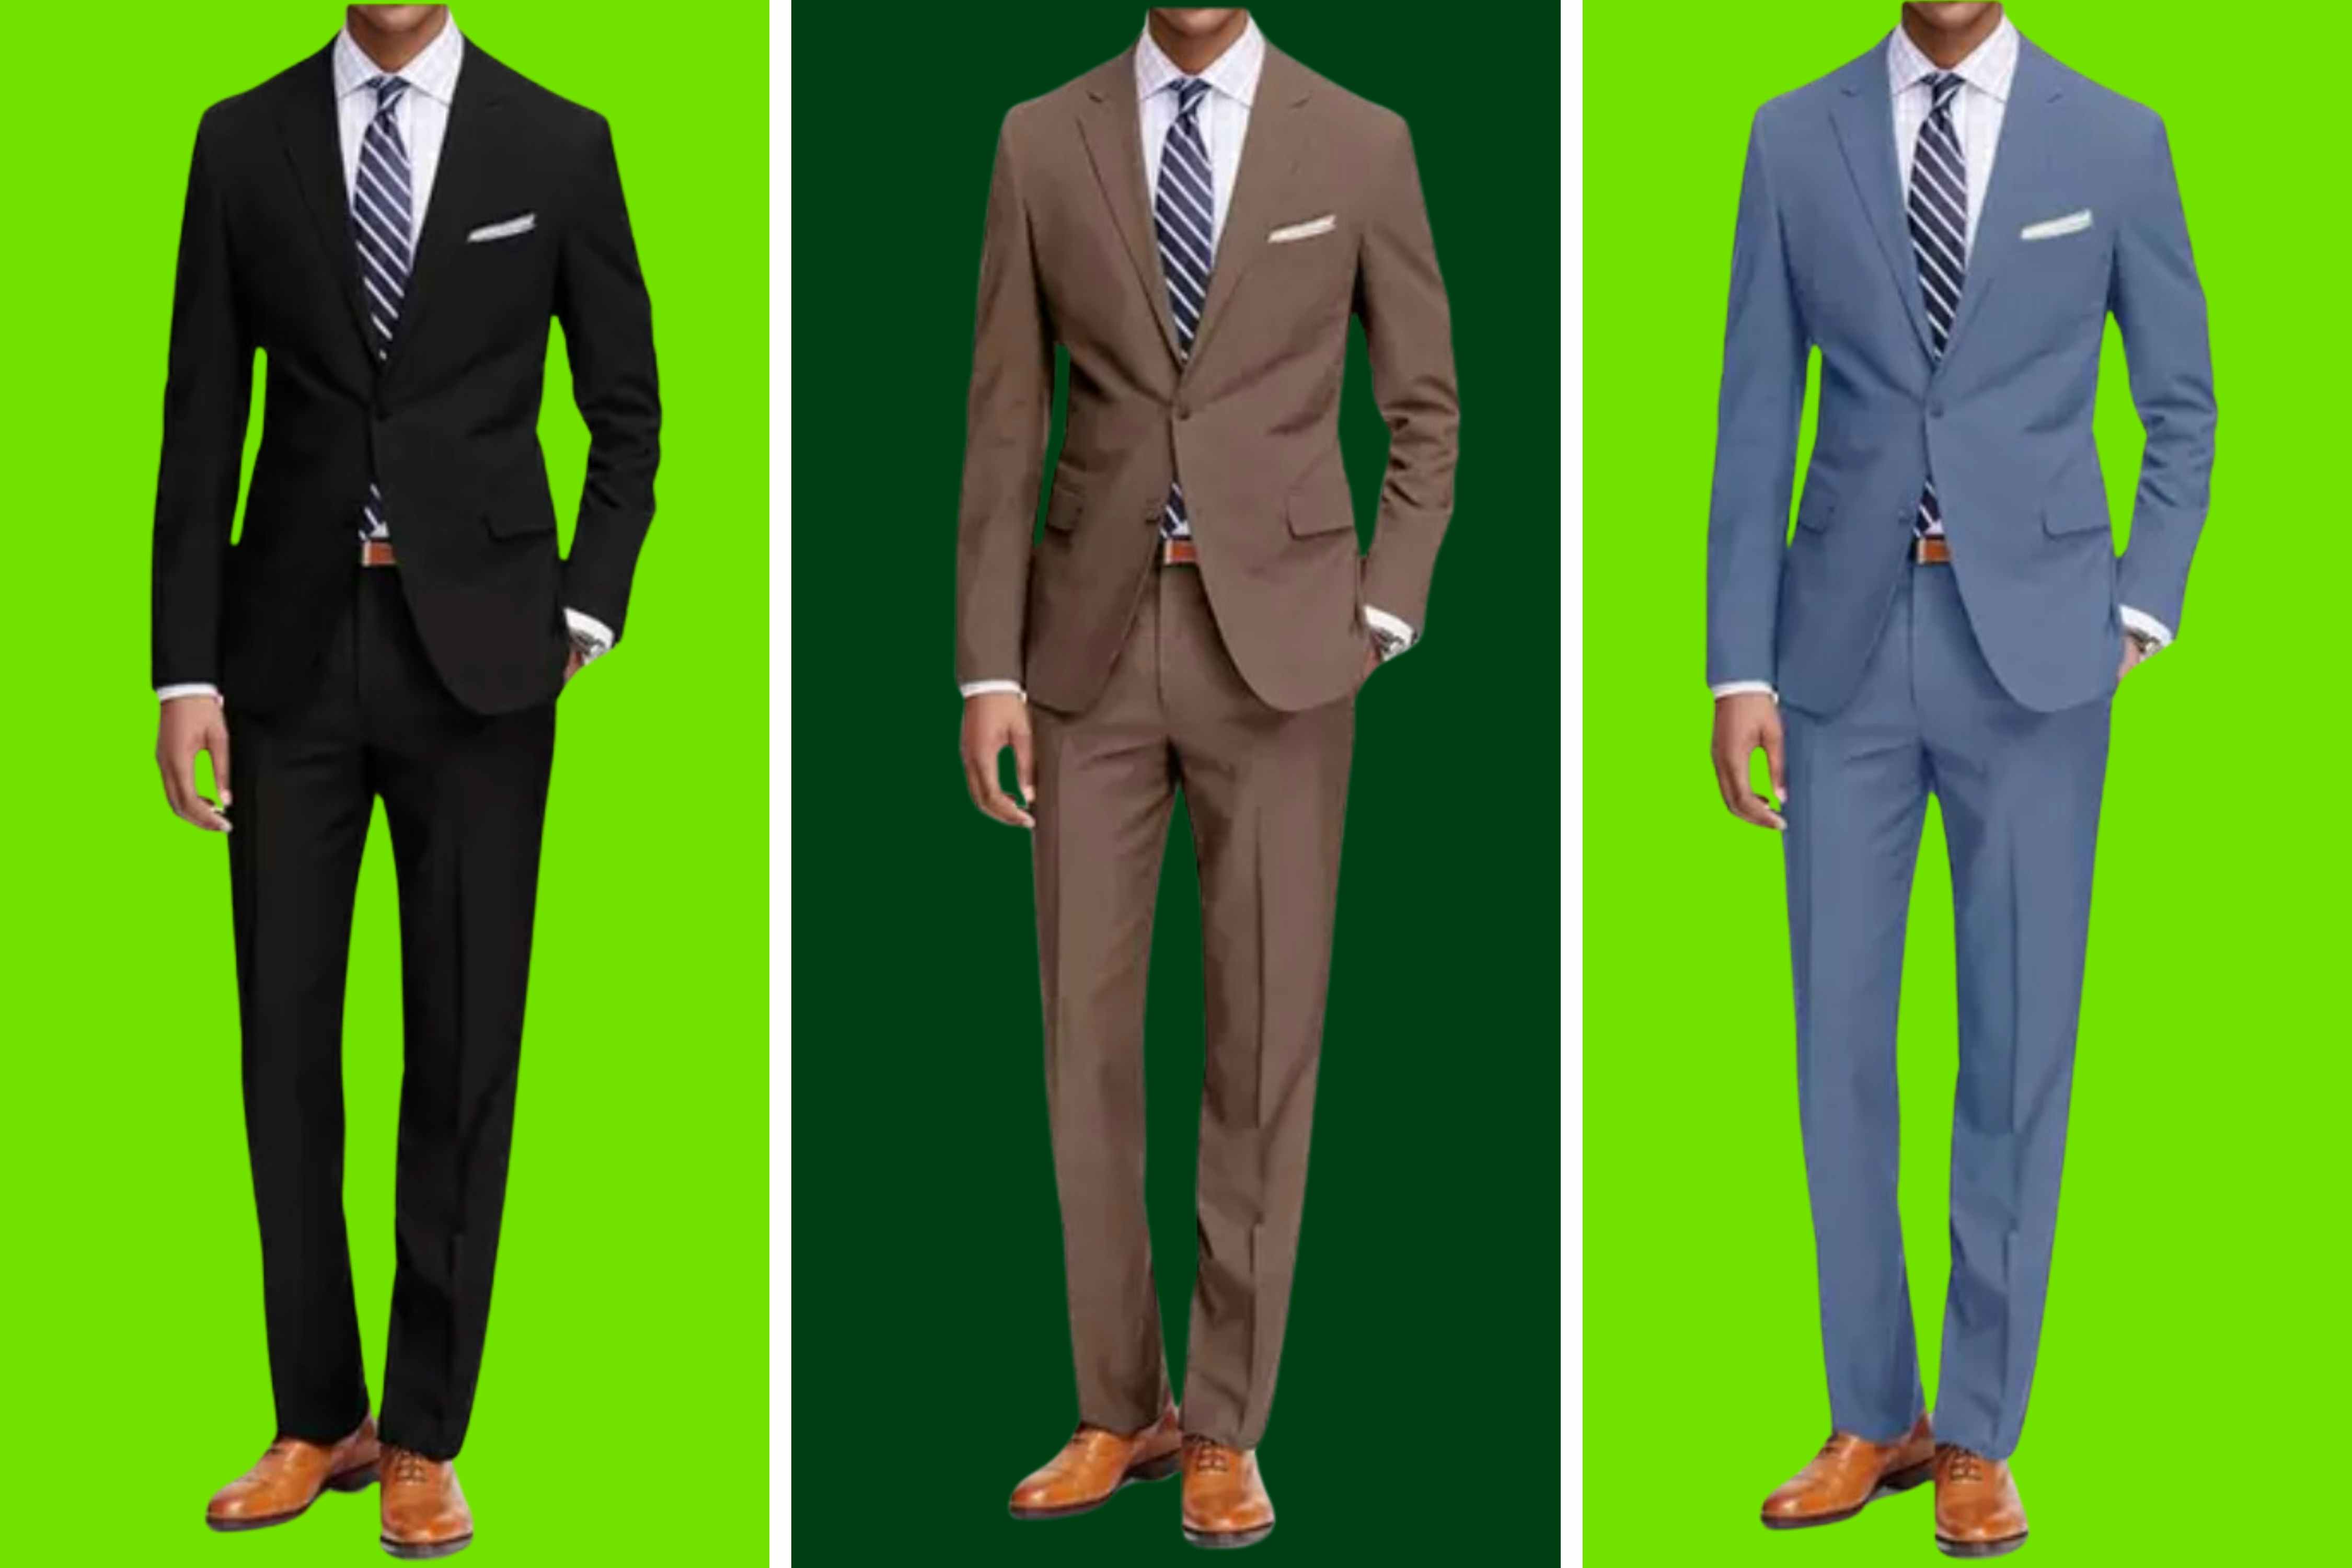 Bravemen Men's 2-Piece Suits, Starting at $70 Shipped at Groupon